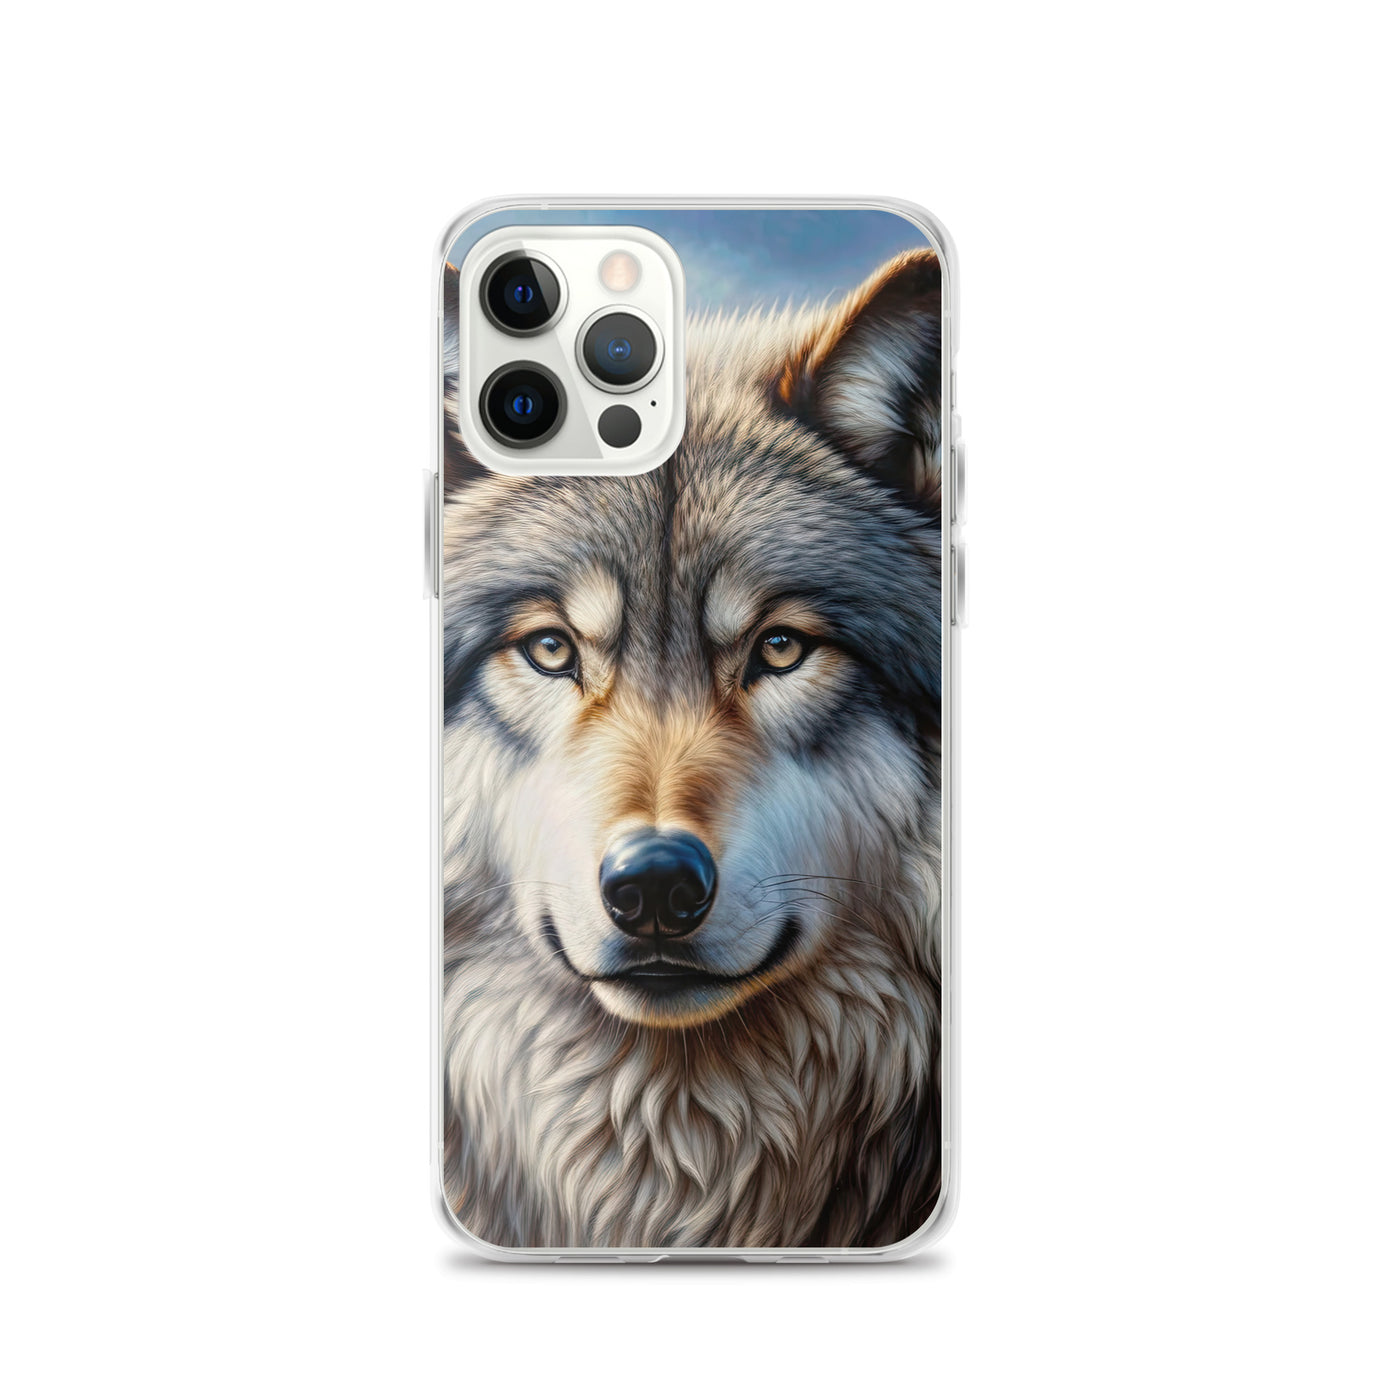 Porträt-Ölgemälde eines prächtigen Wolfes mit faszinierenden Augen (AN) - iPhone Schutzhülle (durchsichtig) xxx yyy zzz iPhone 12 Pro